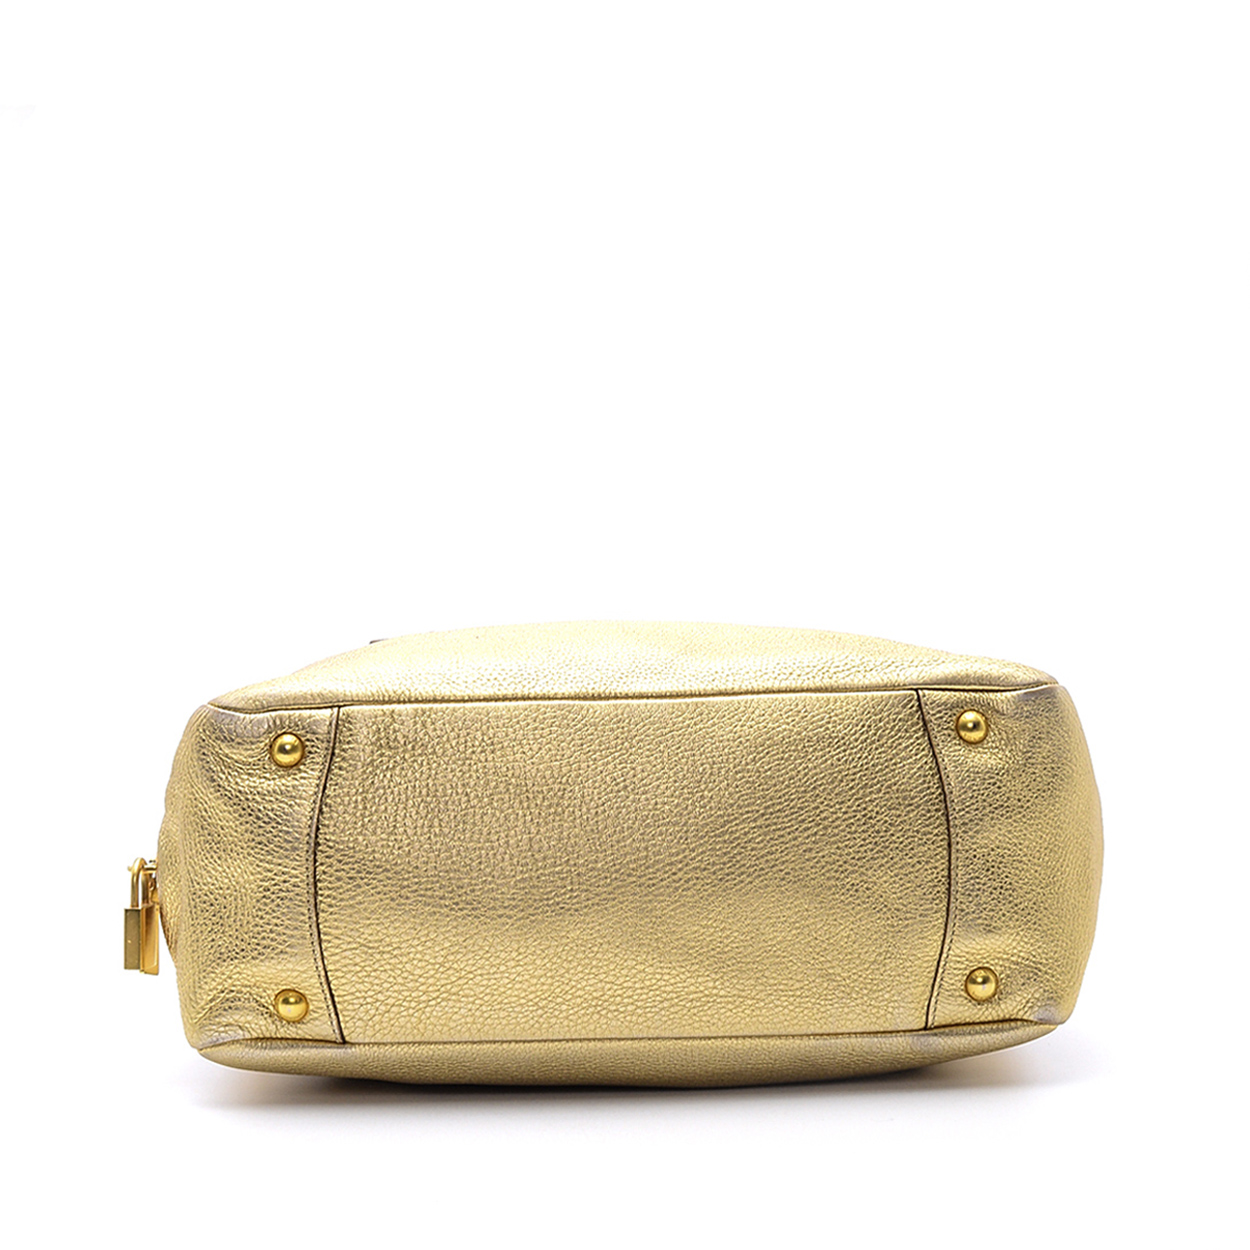 Prada - Gold Daino Vitello Leather Shopper Tote Bag